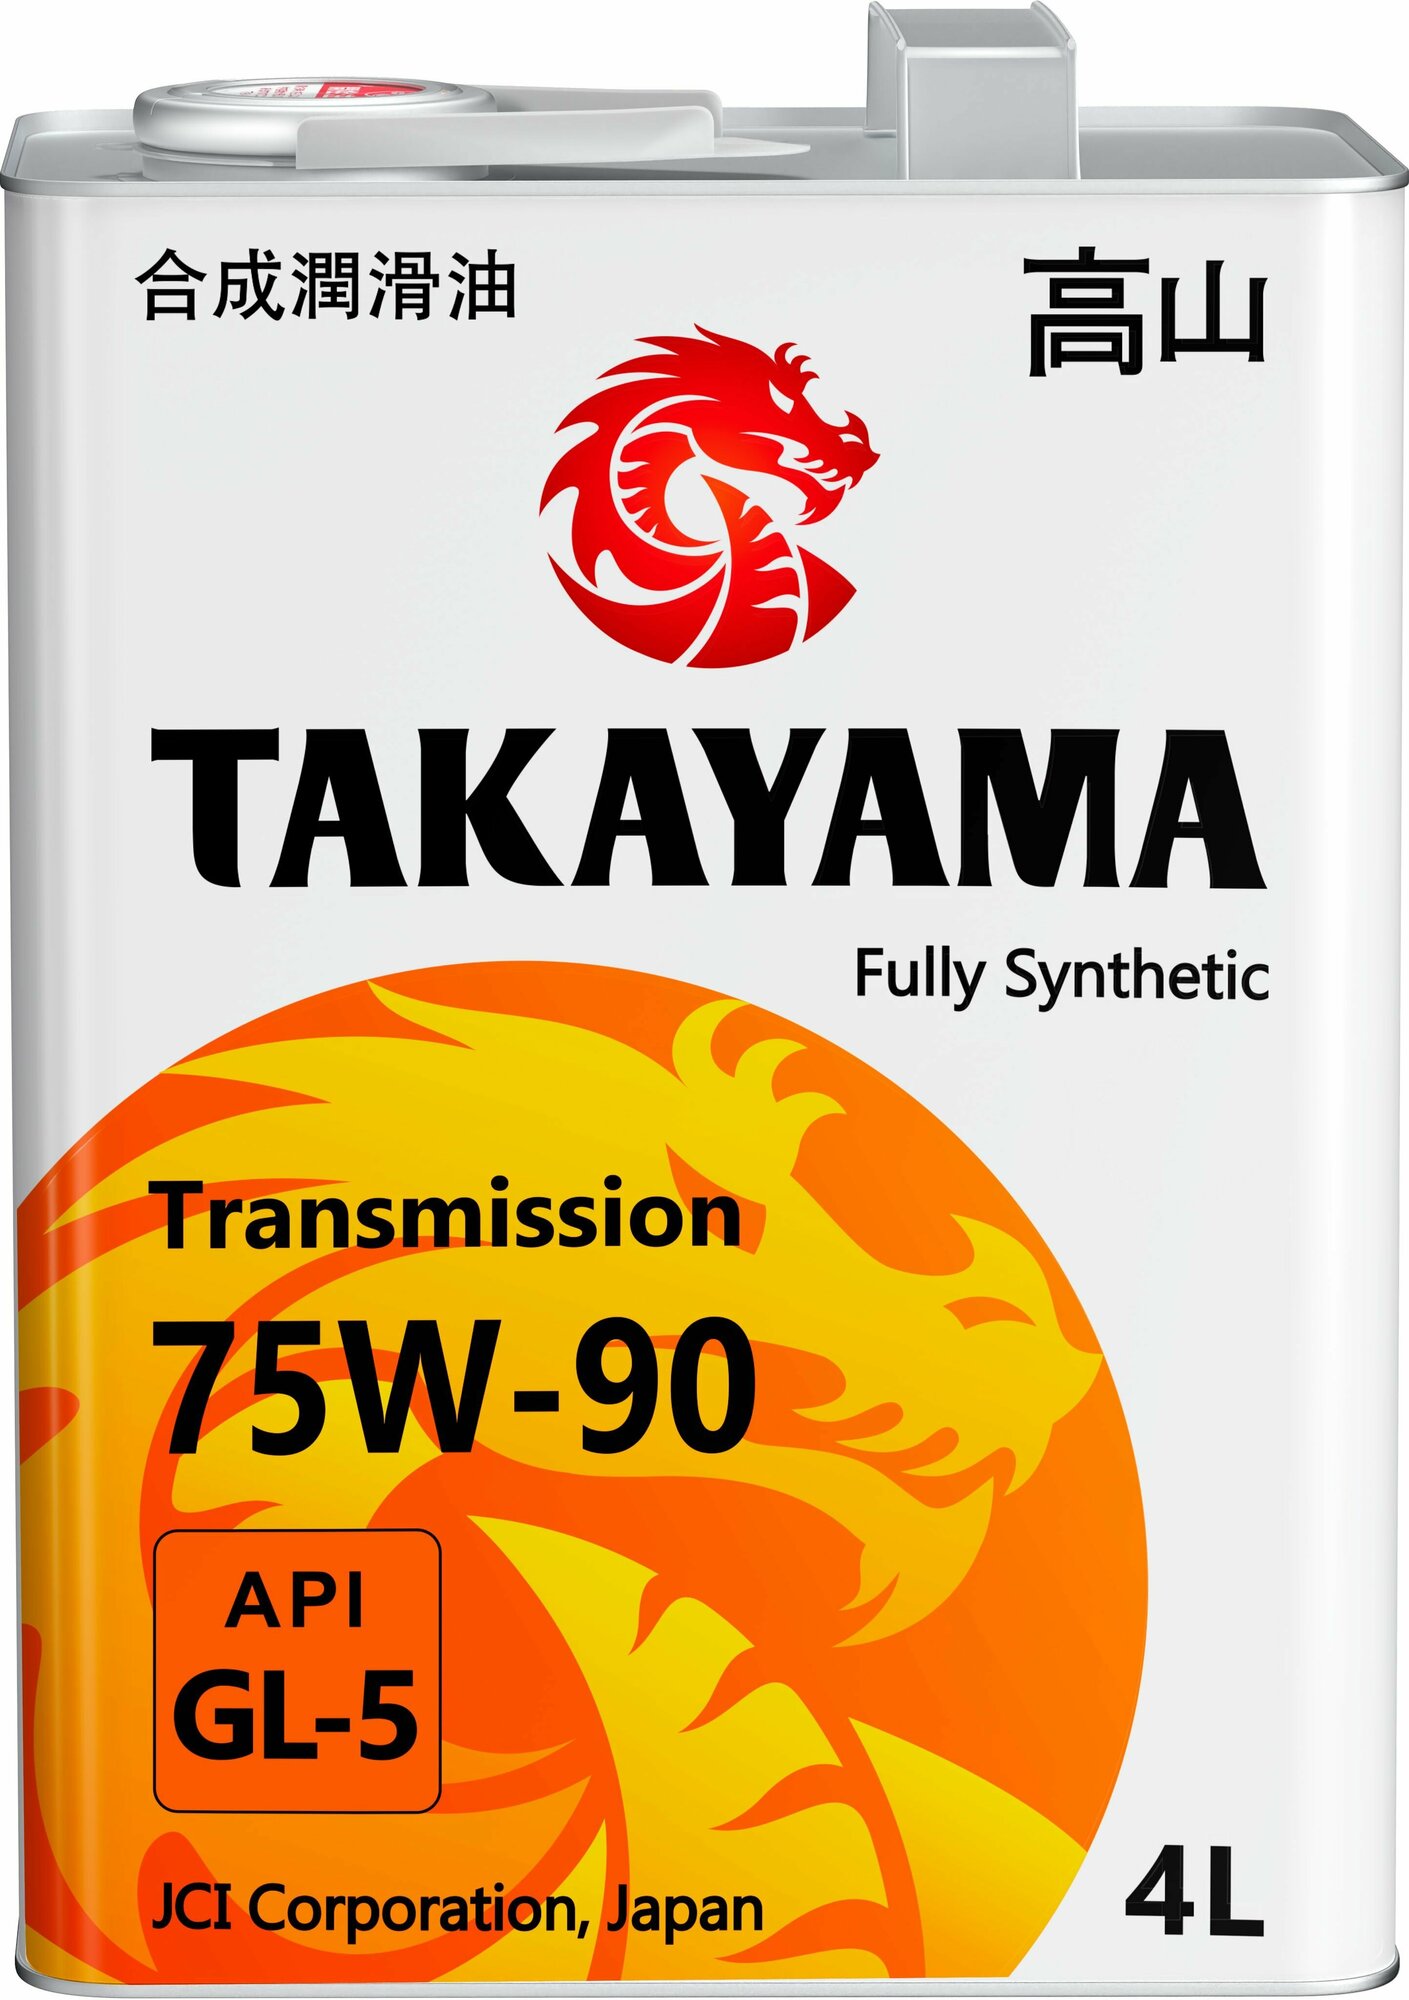 TAKAYAMA Transmission 75W-90 API GL-5 4л металл (605593/605053)